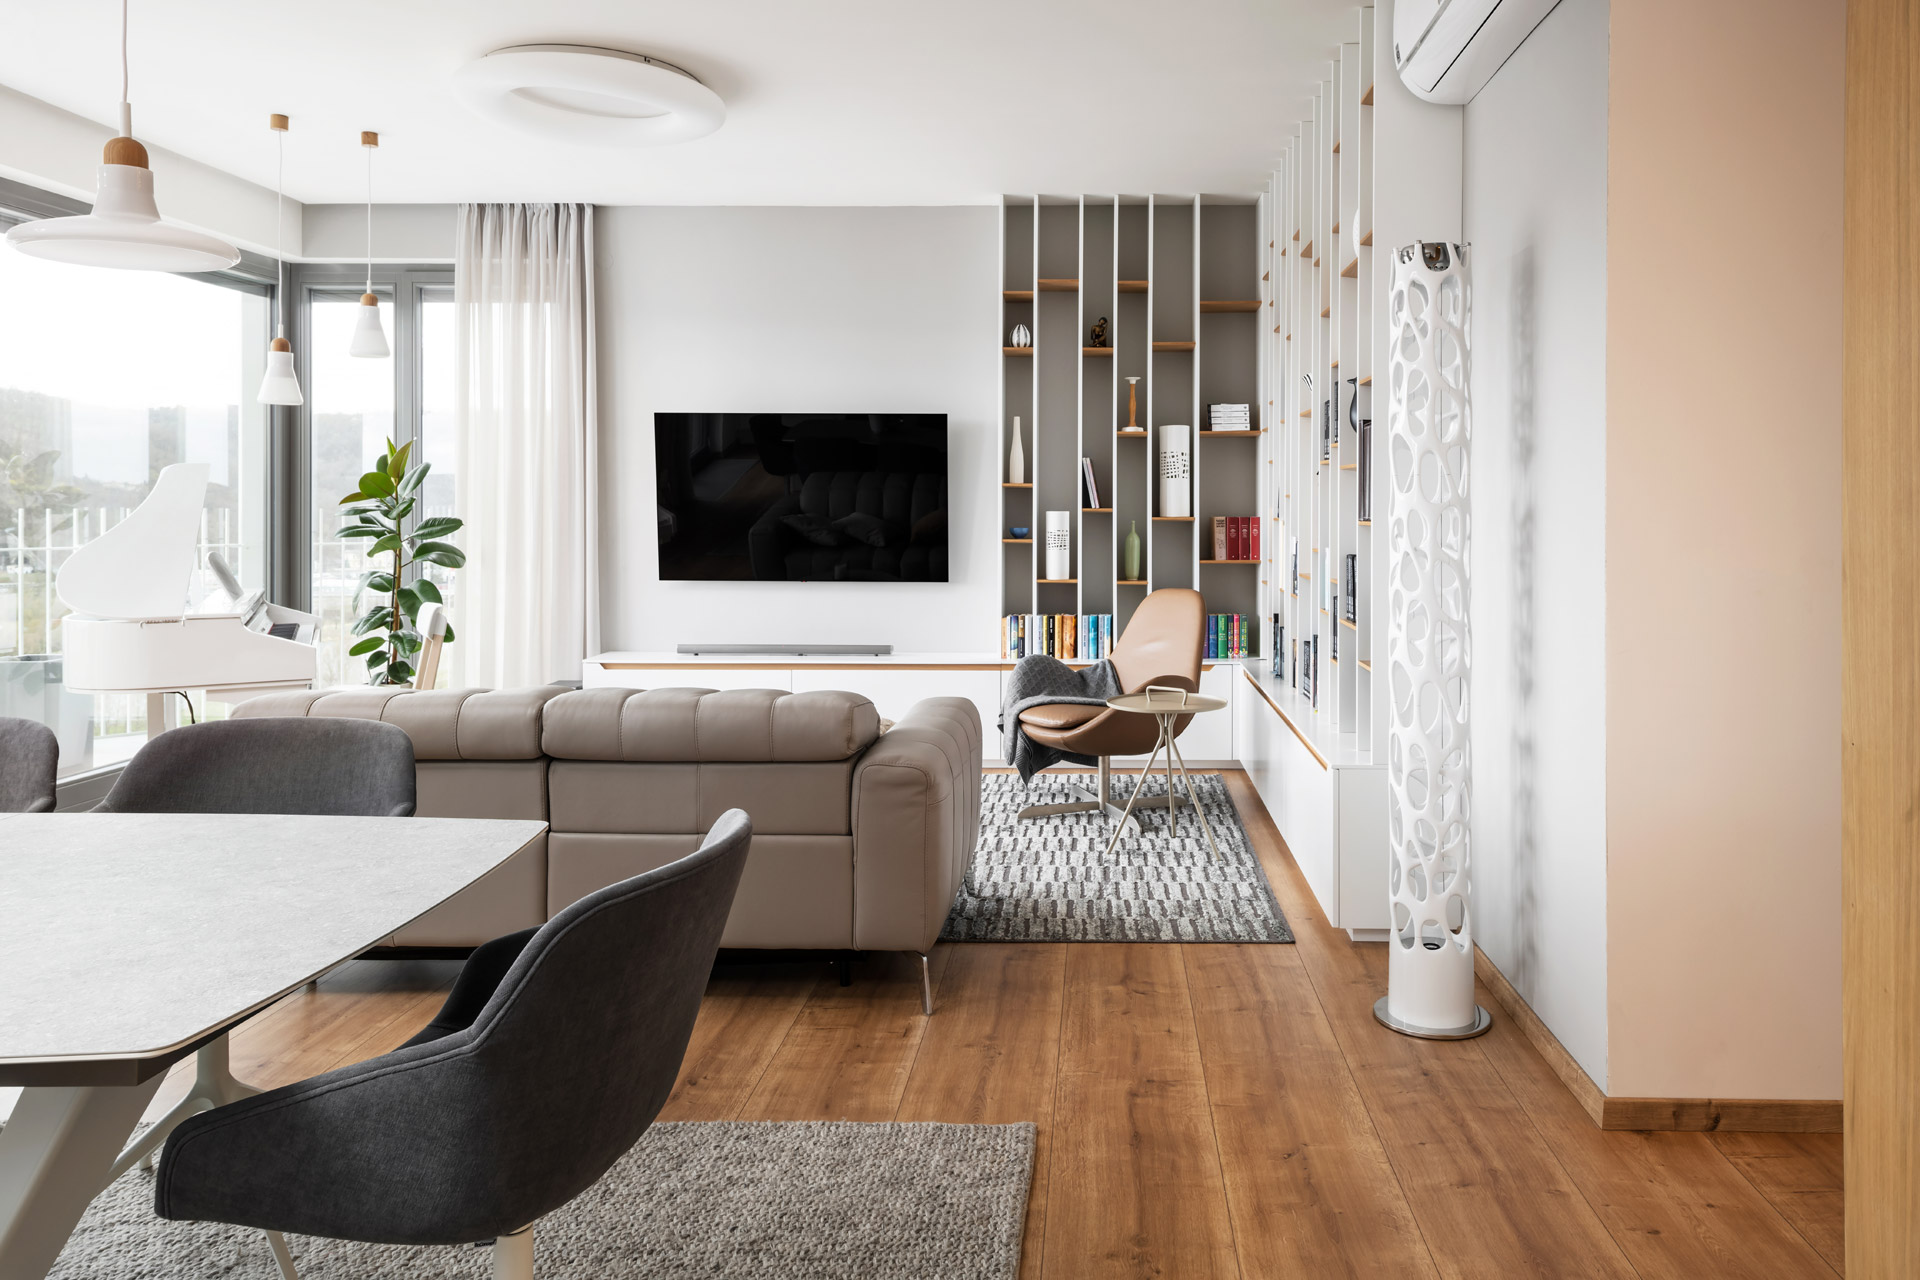 Hanák Furniture Living Room Realization